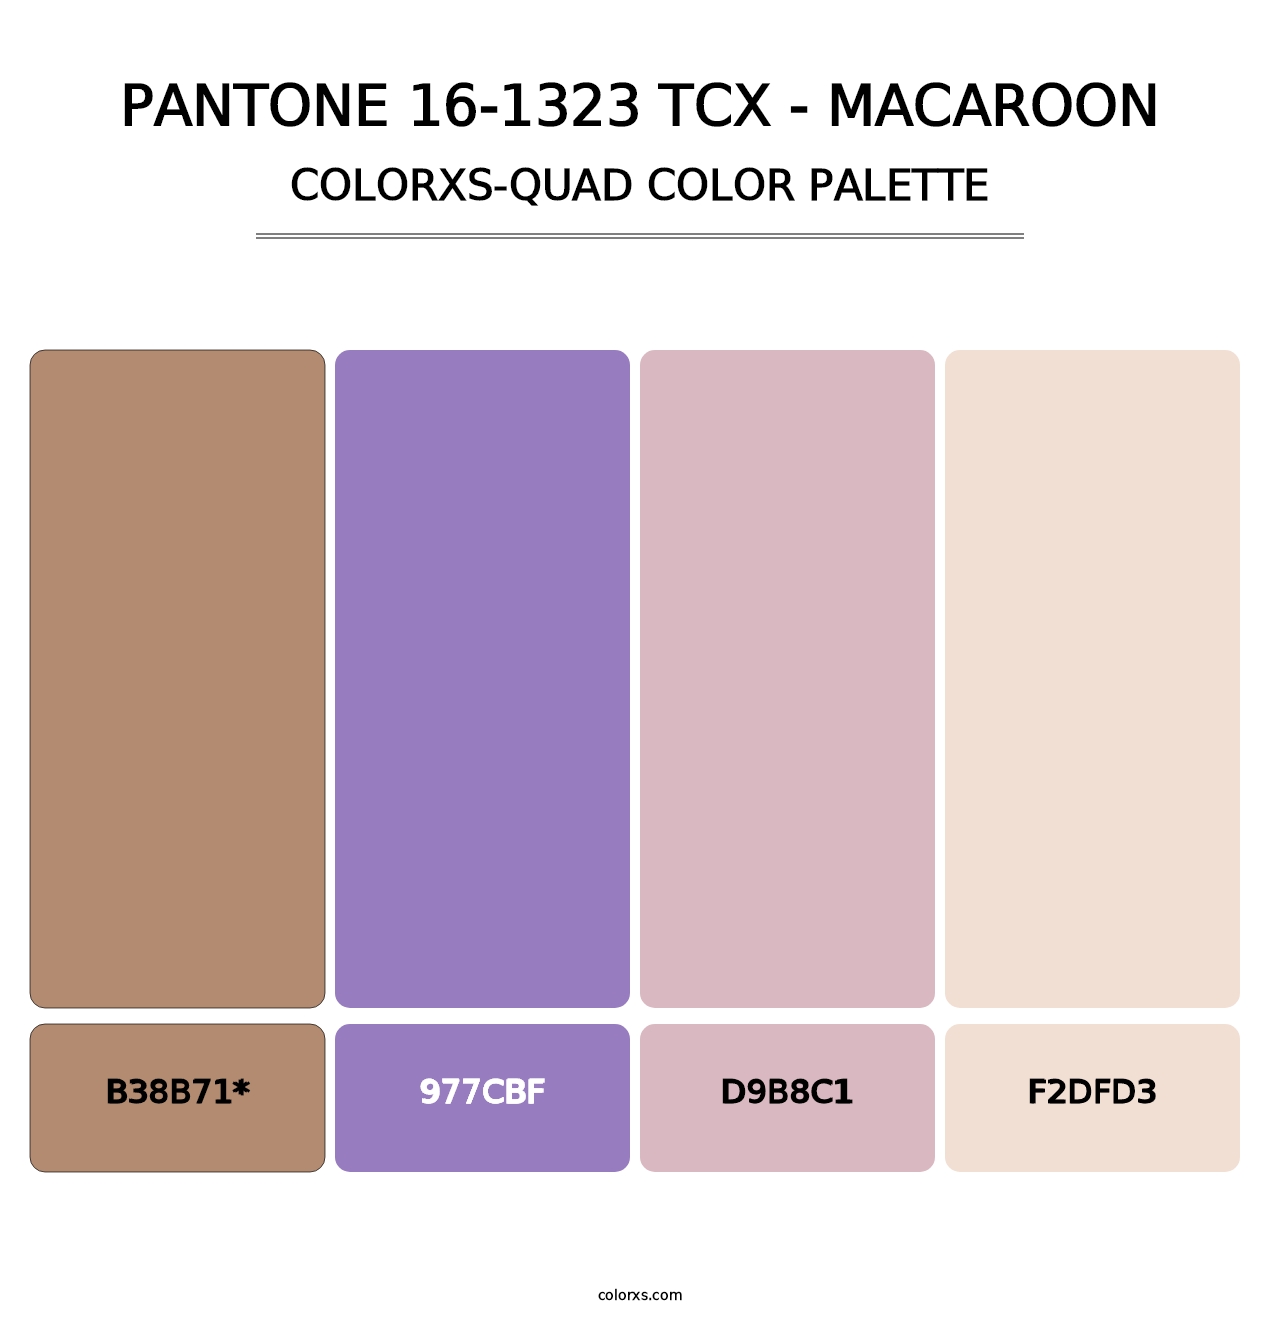 PANTONE 16-1323 TCX - Macaroon - Colorxs Quad Palette